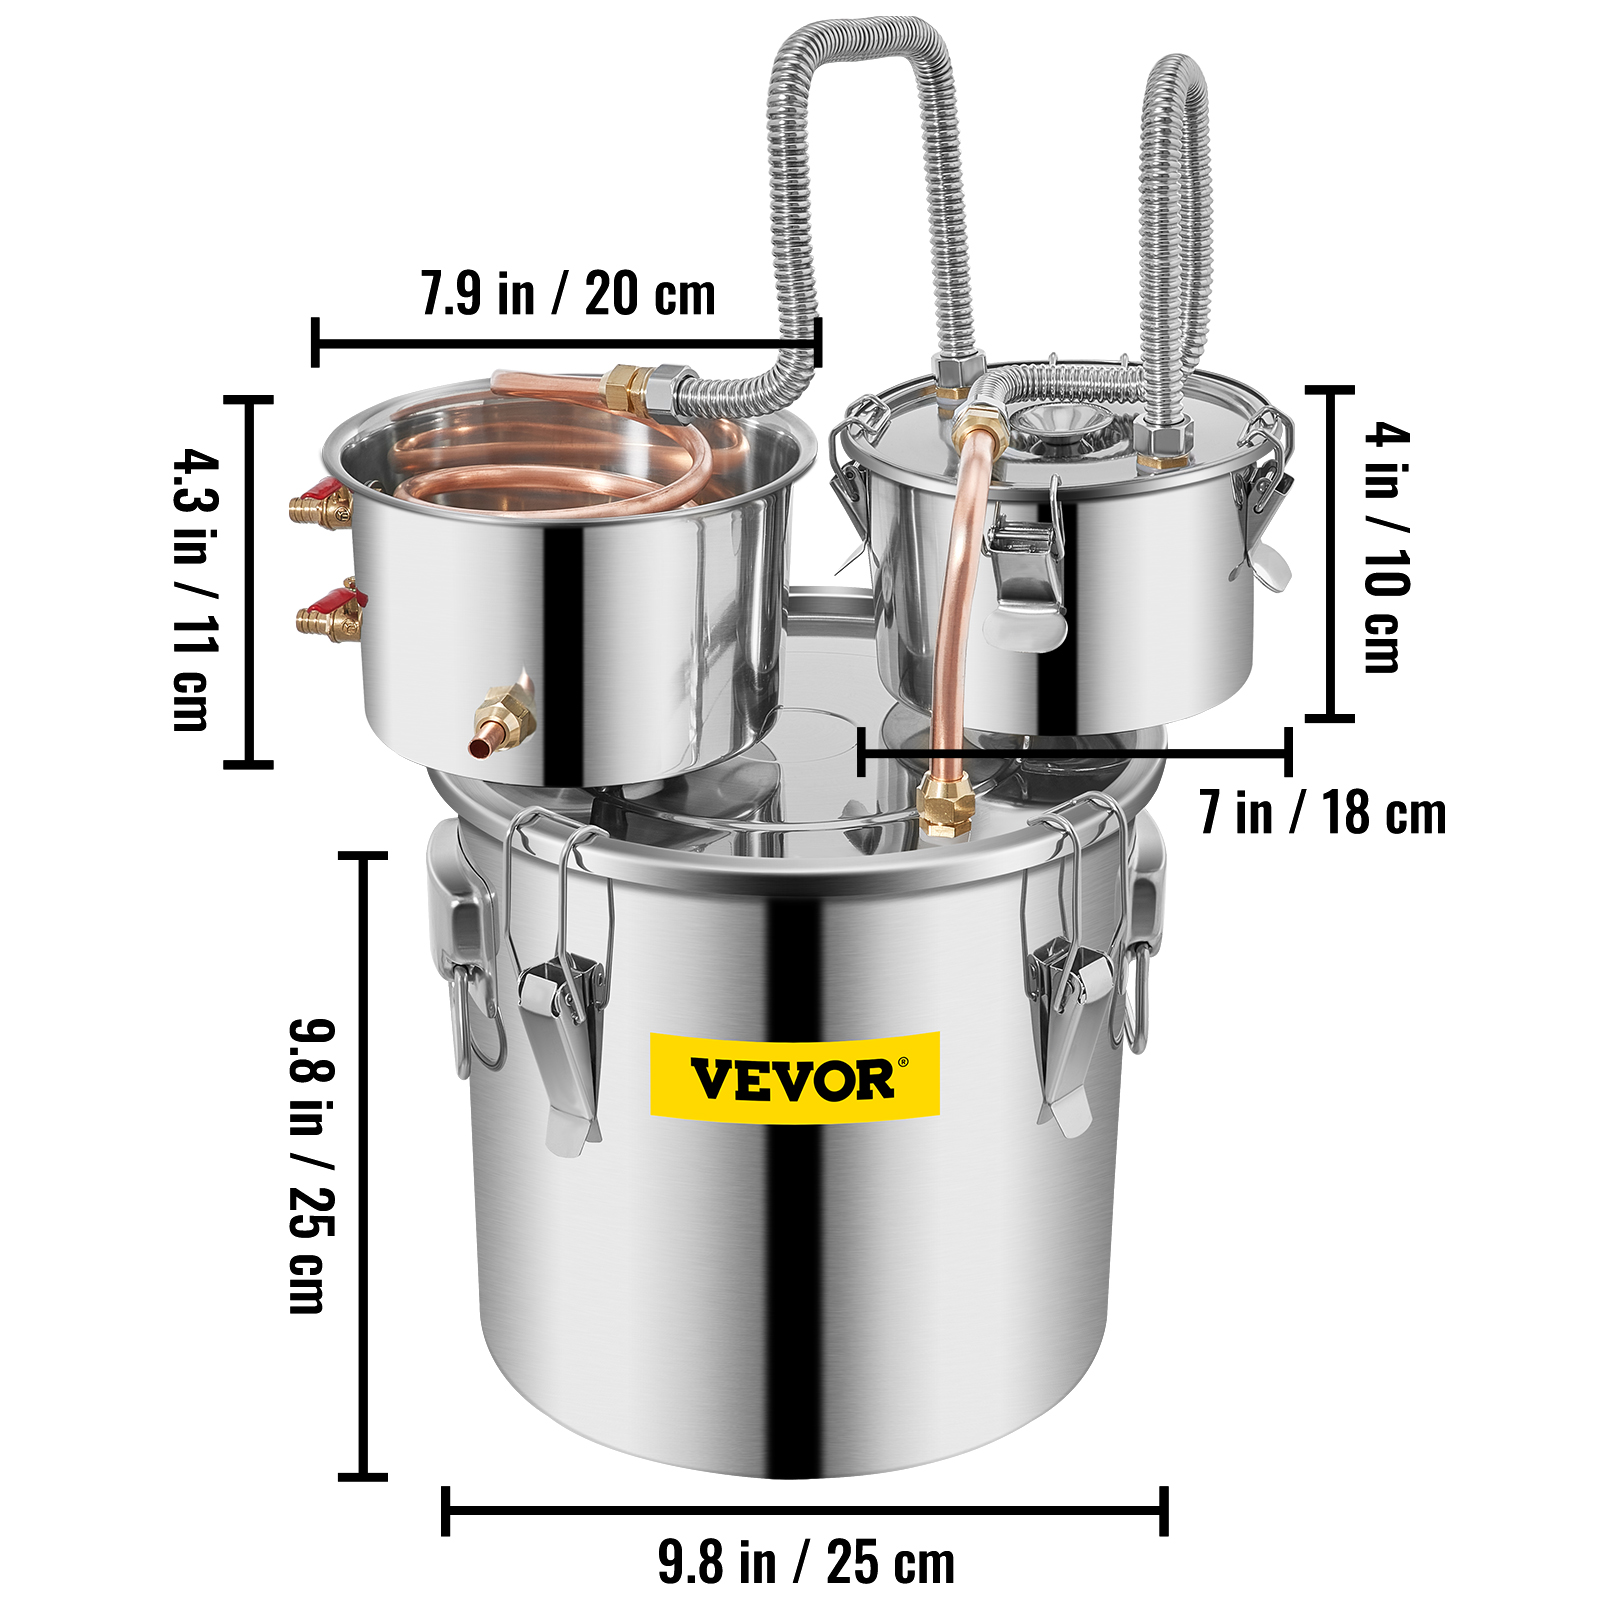 VEVOR Distillateur Alambic 11,4/19/30 L Condenseur Thermomètre Eau